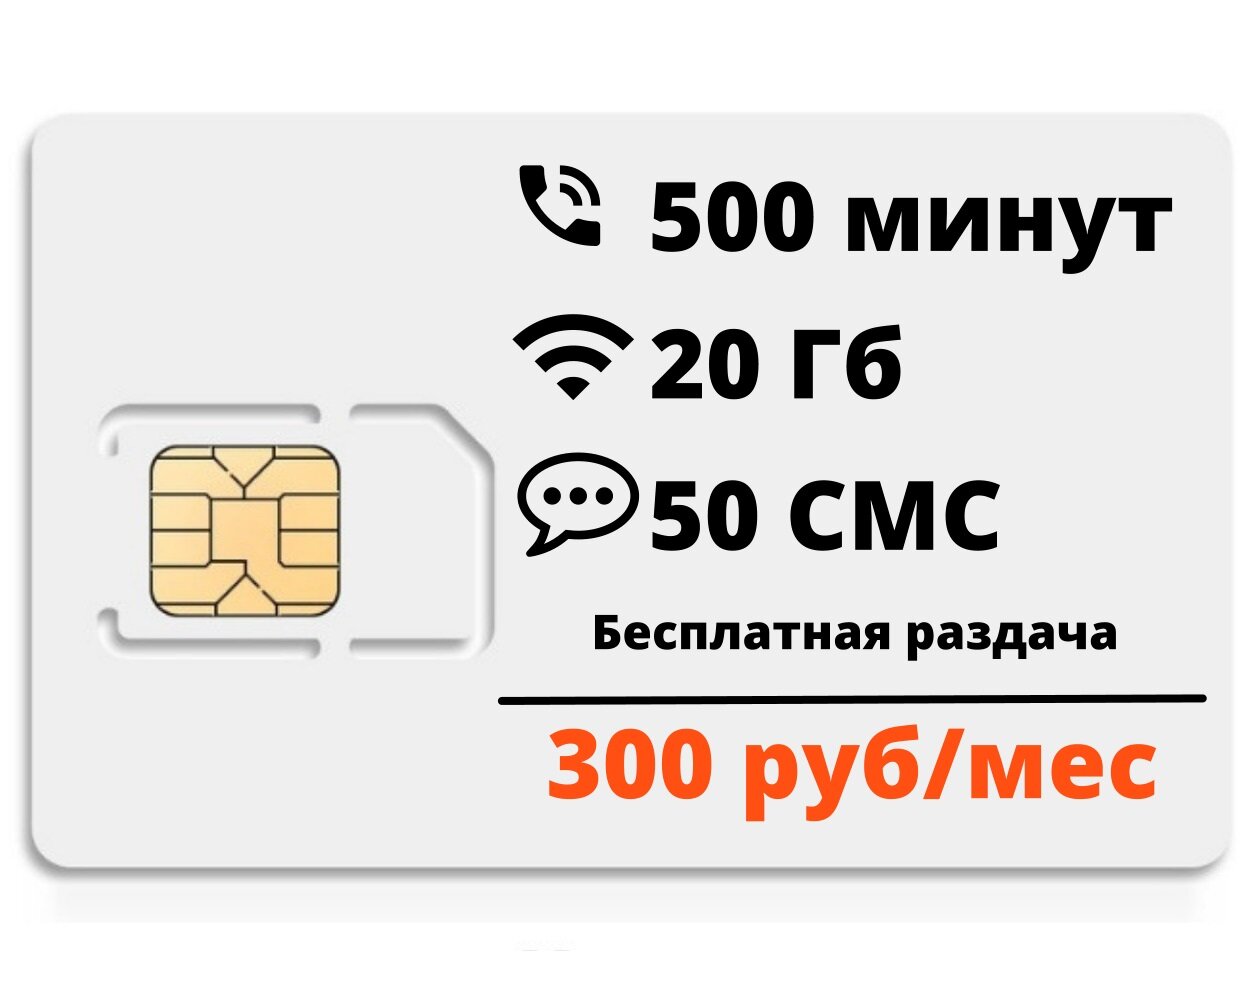 Сим-карта "Эконом тариф" 500мин/20гб, безлимит внутри сети, бесплатная раздача